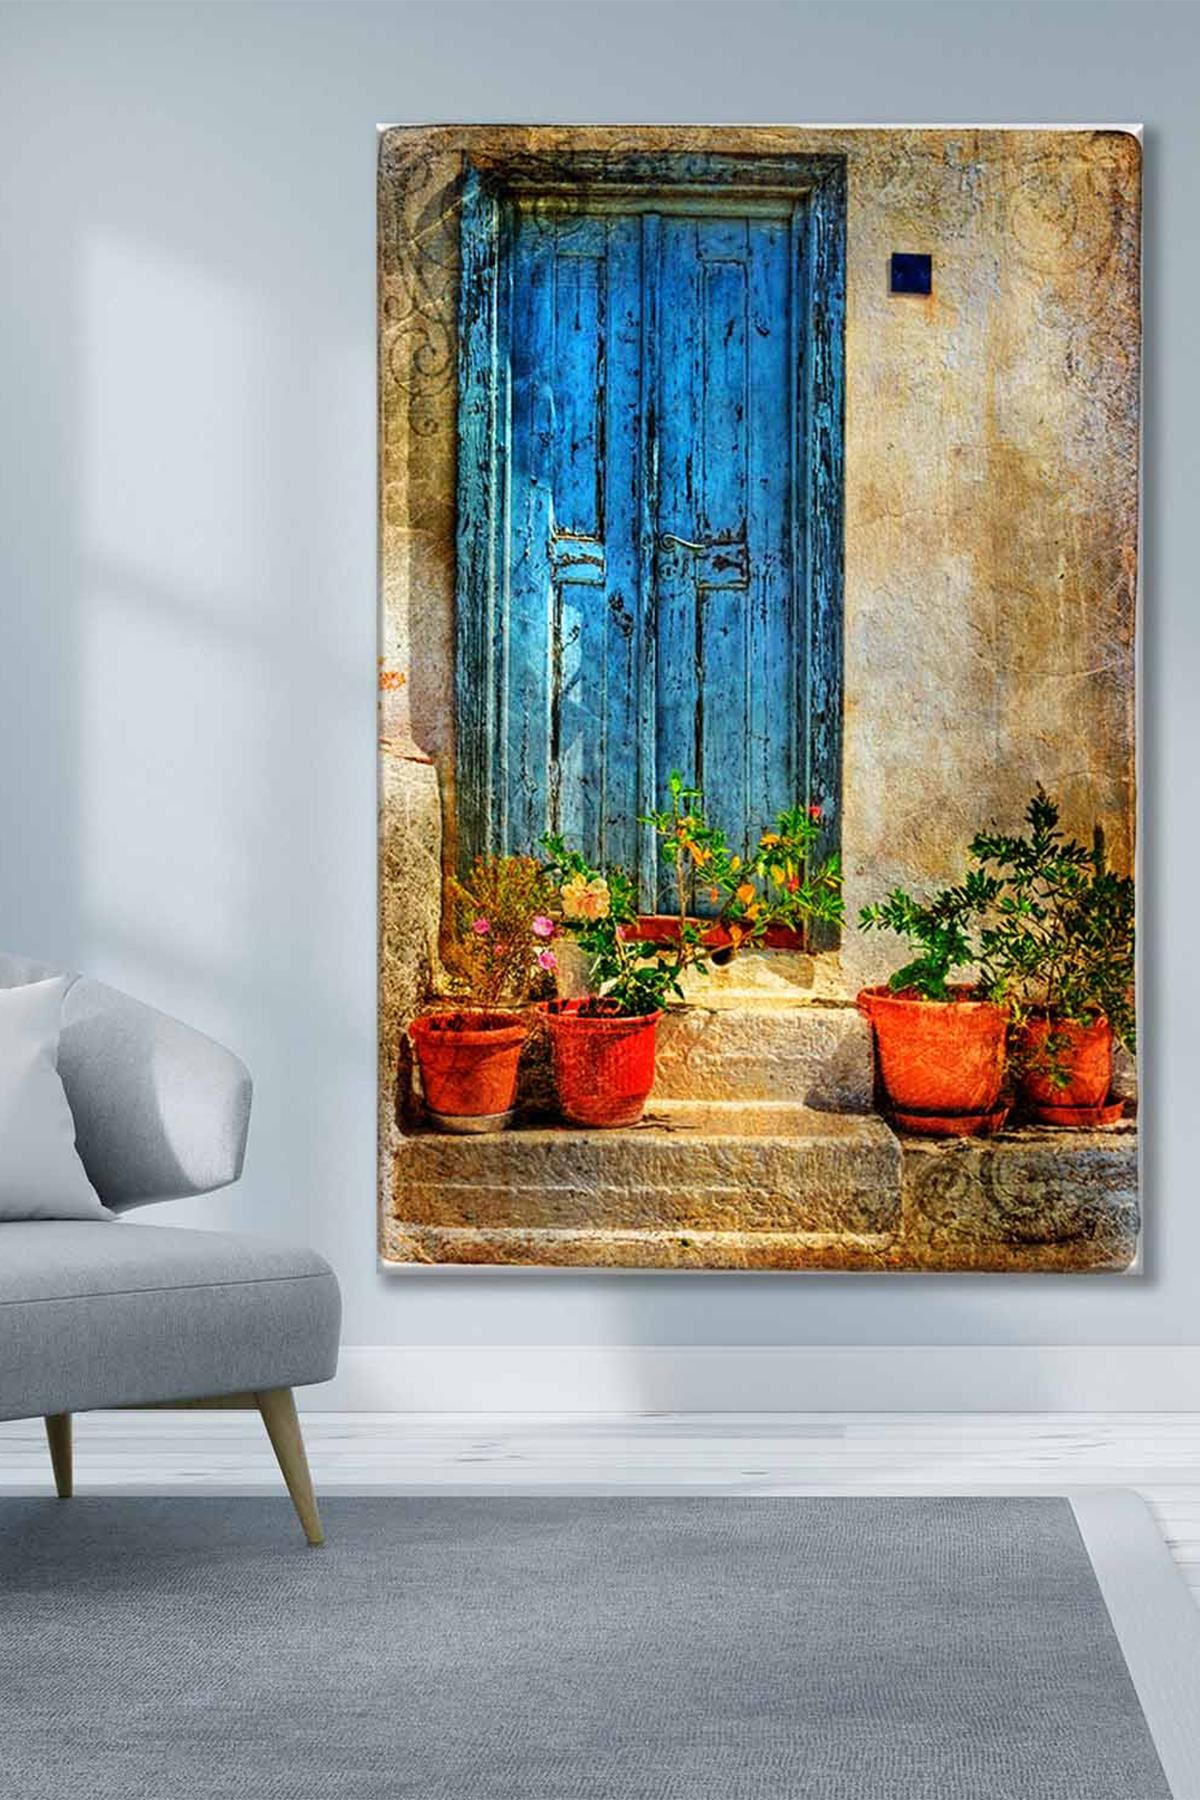 Mavi Ahşap Kapının Önünde Duran Çiçekler Art Kanvas Tablo 2221856